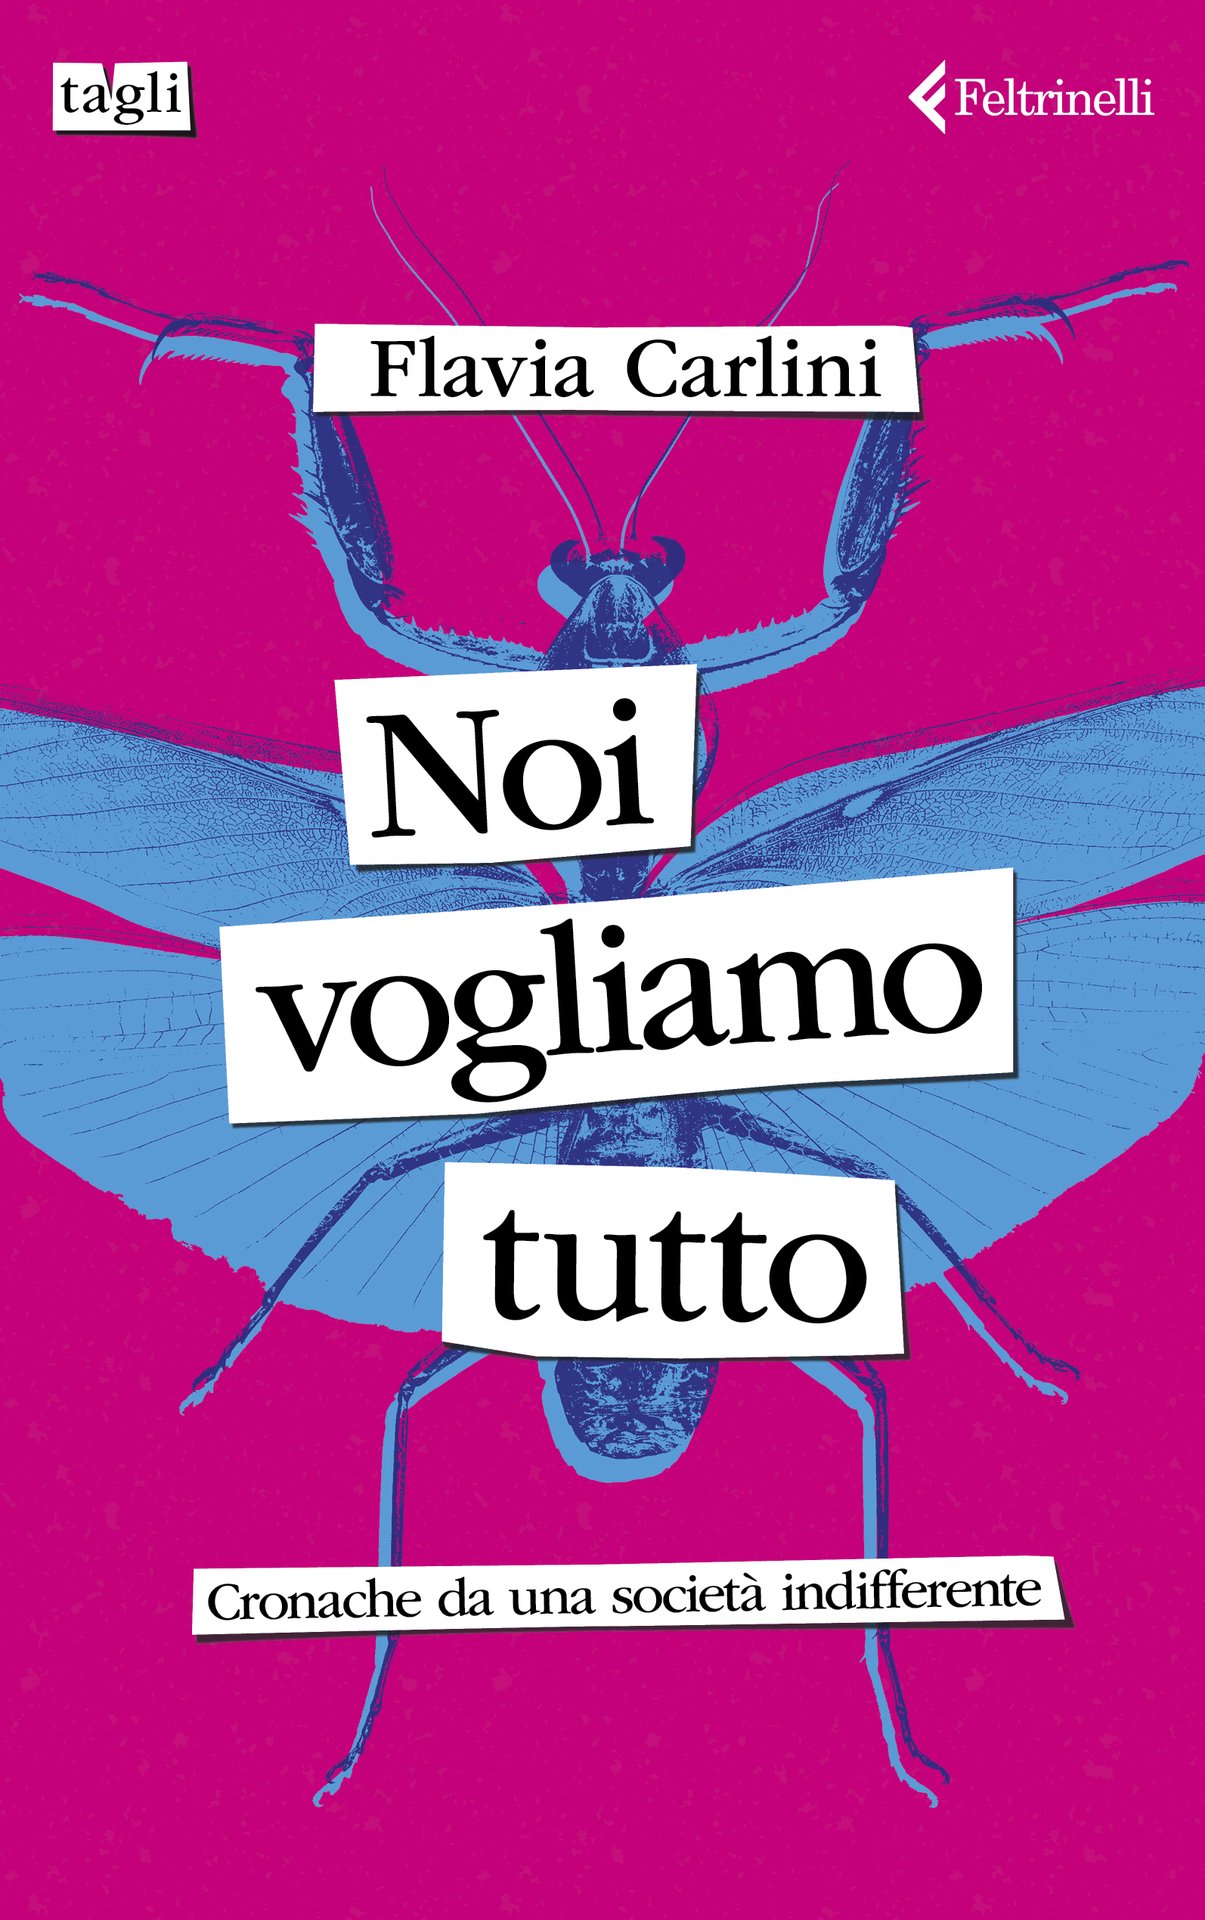 Flavia Carlini presenta "Noi vogliamo tutto" a Milano